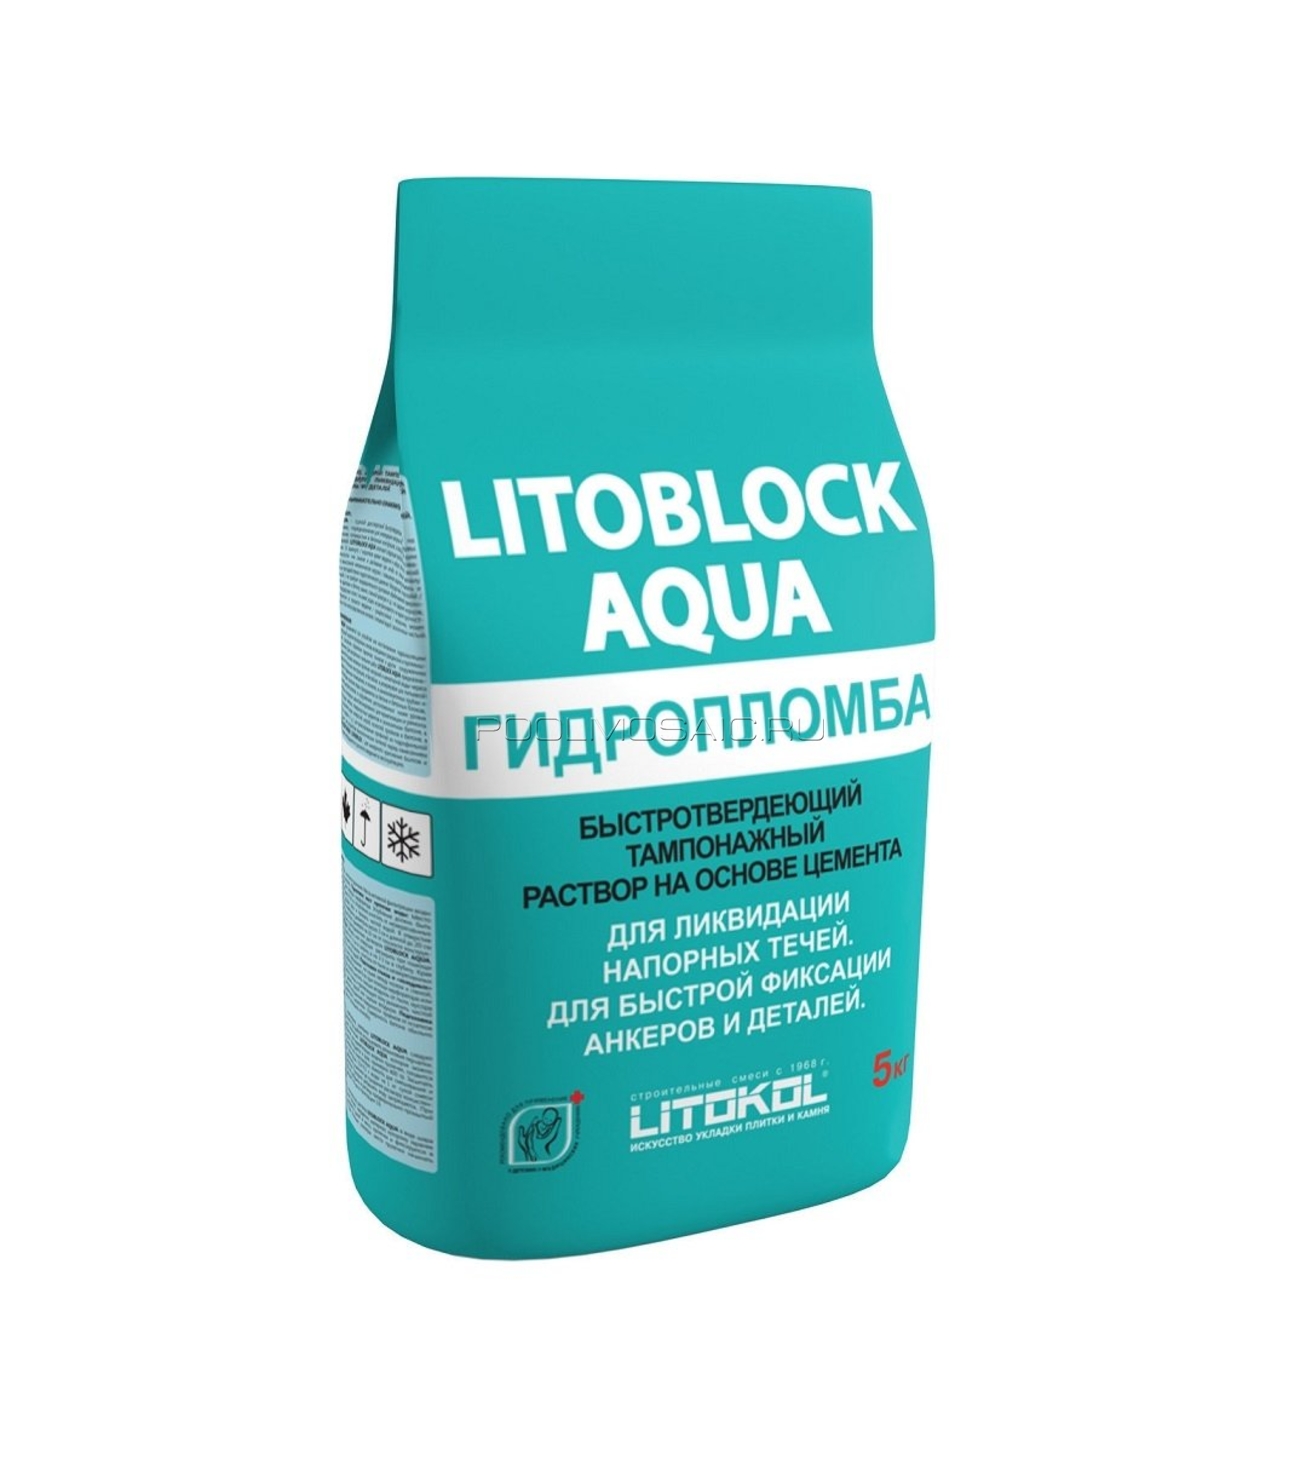 Гидроизоляция раствор. LITOBLOCK Aqua гидропломба (5kg al.Bag). Гидропломба Литокол. Гидропломба Литокол для бетона. Гидропломба Боларс 0,6кг.